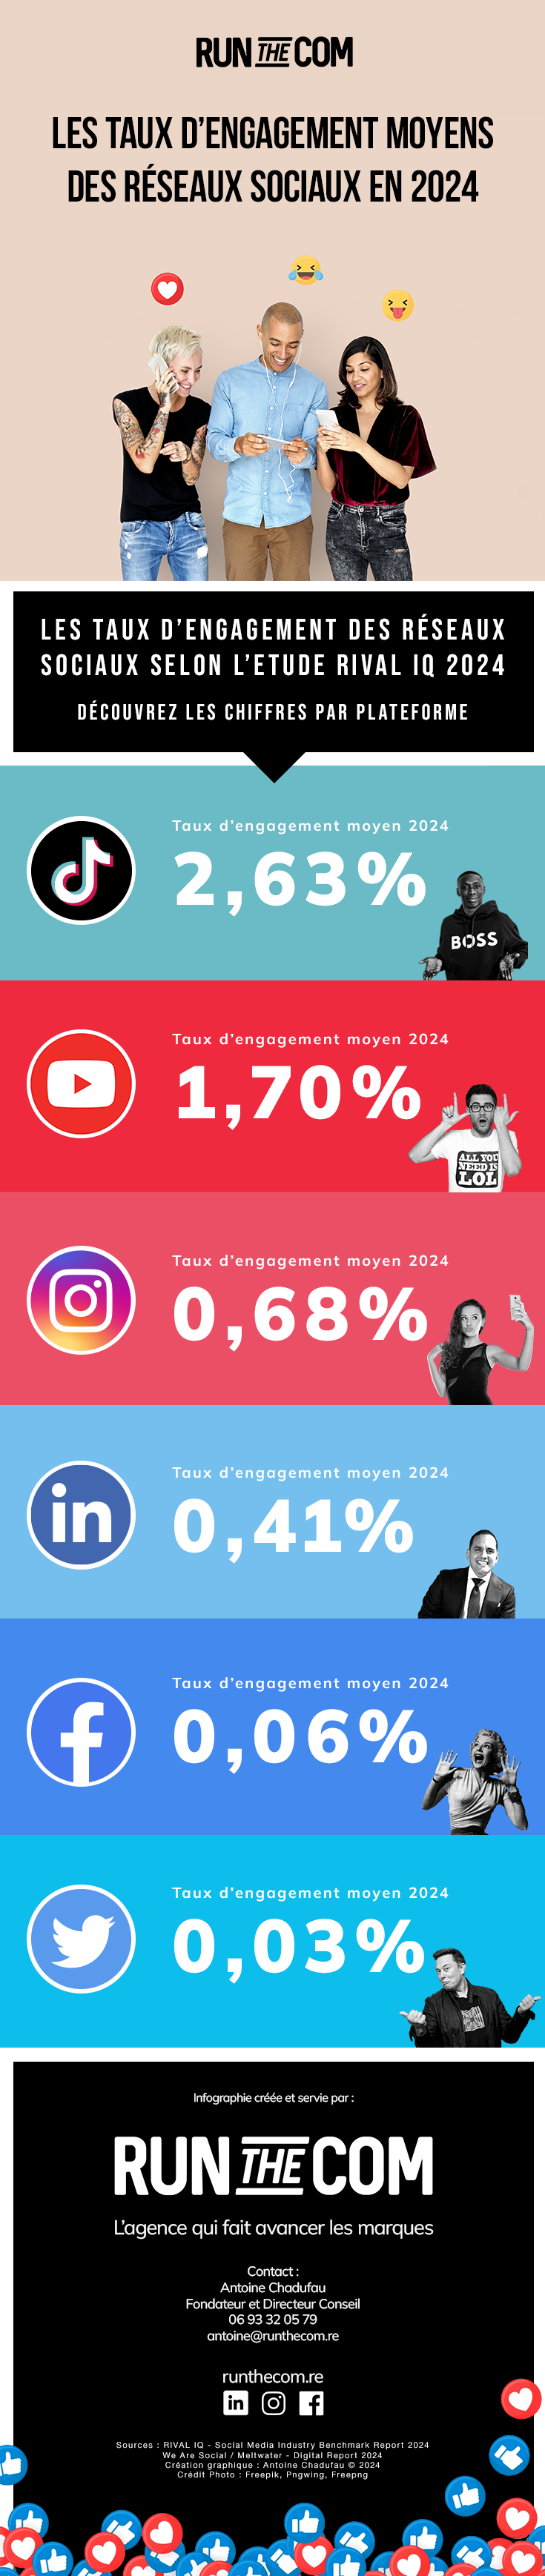 Infographie social media : les taux d'engagement moyens des réseaux sociaux en 2024